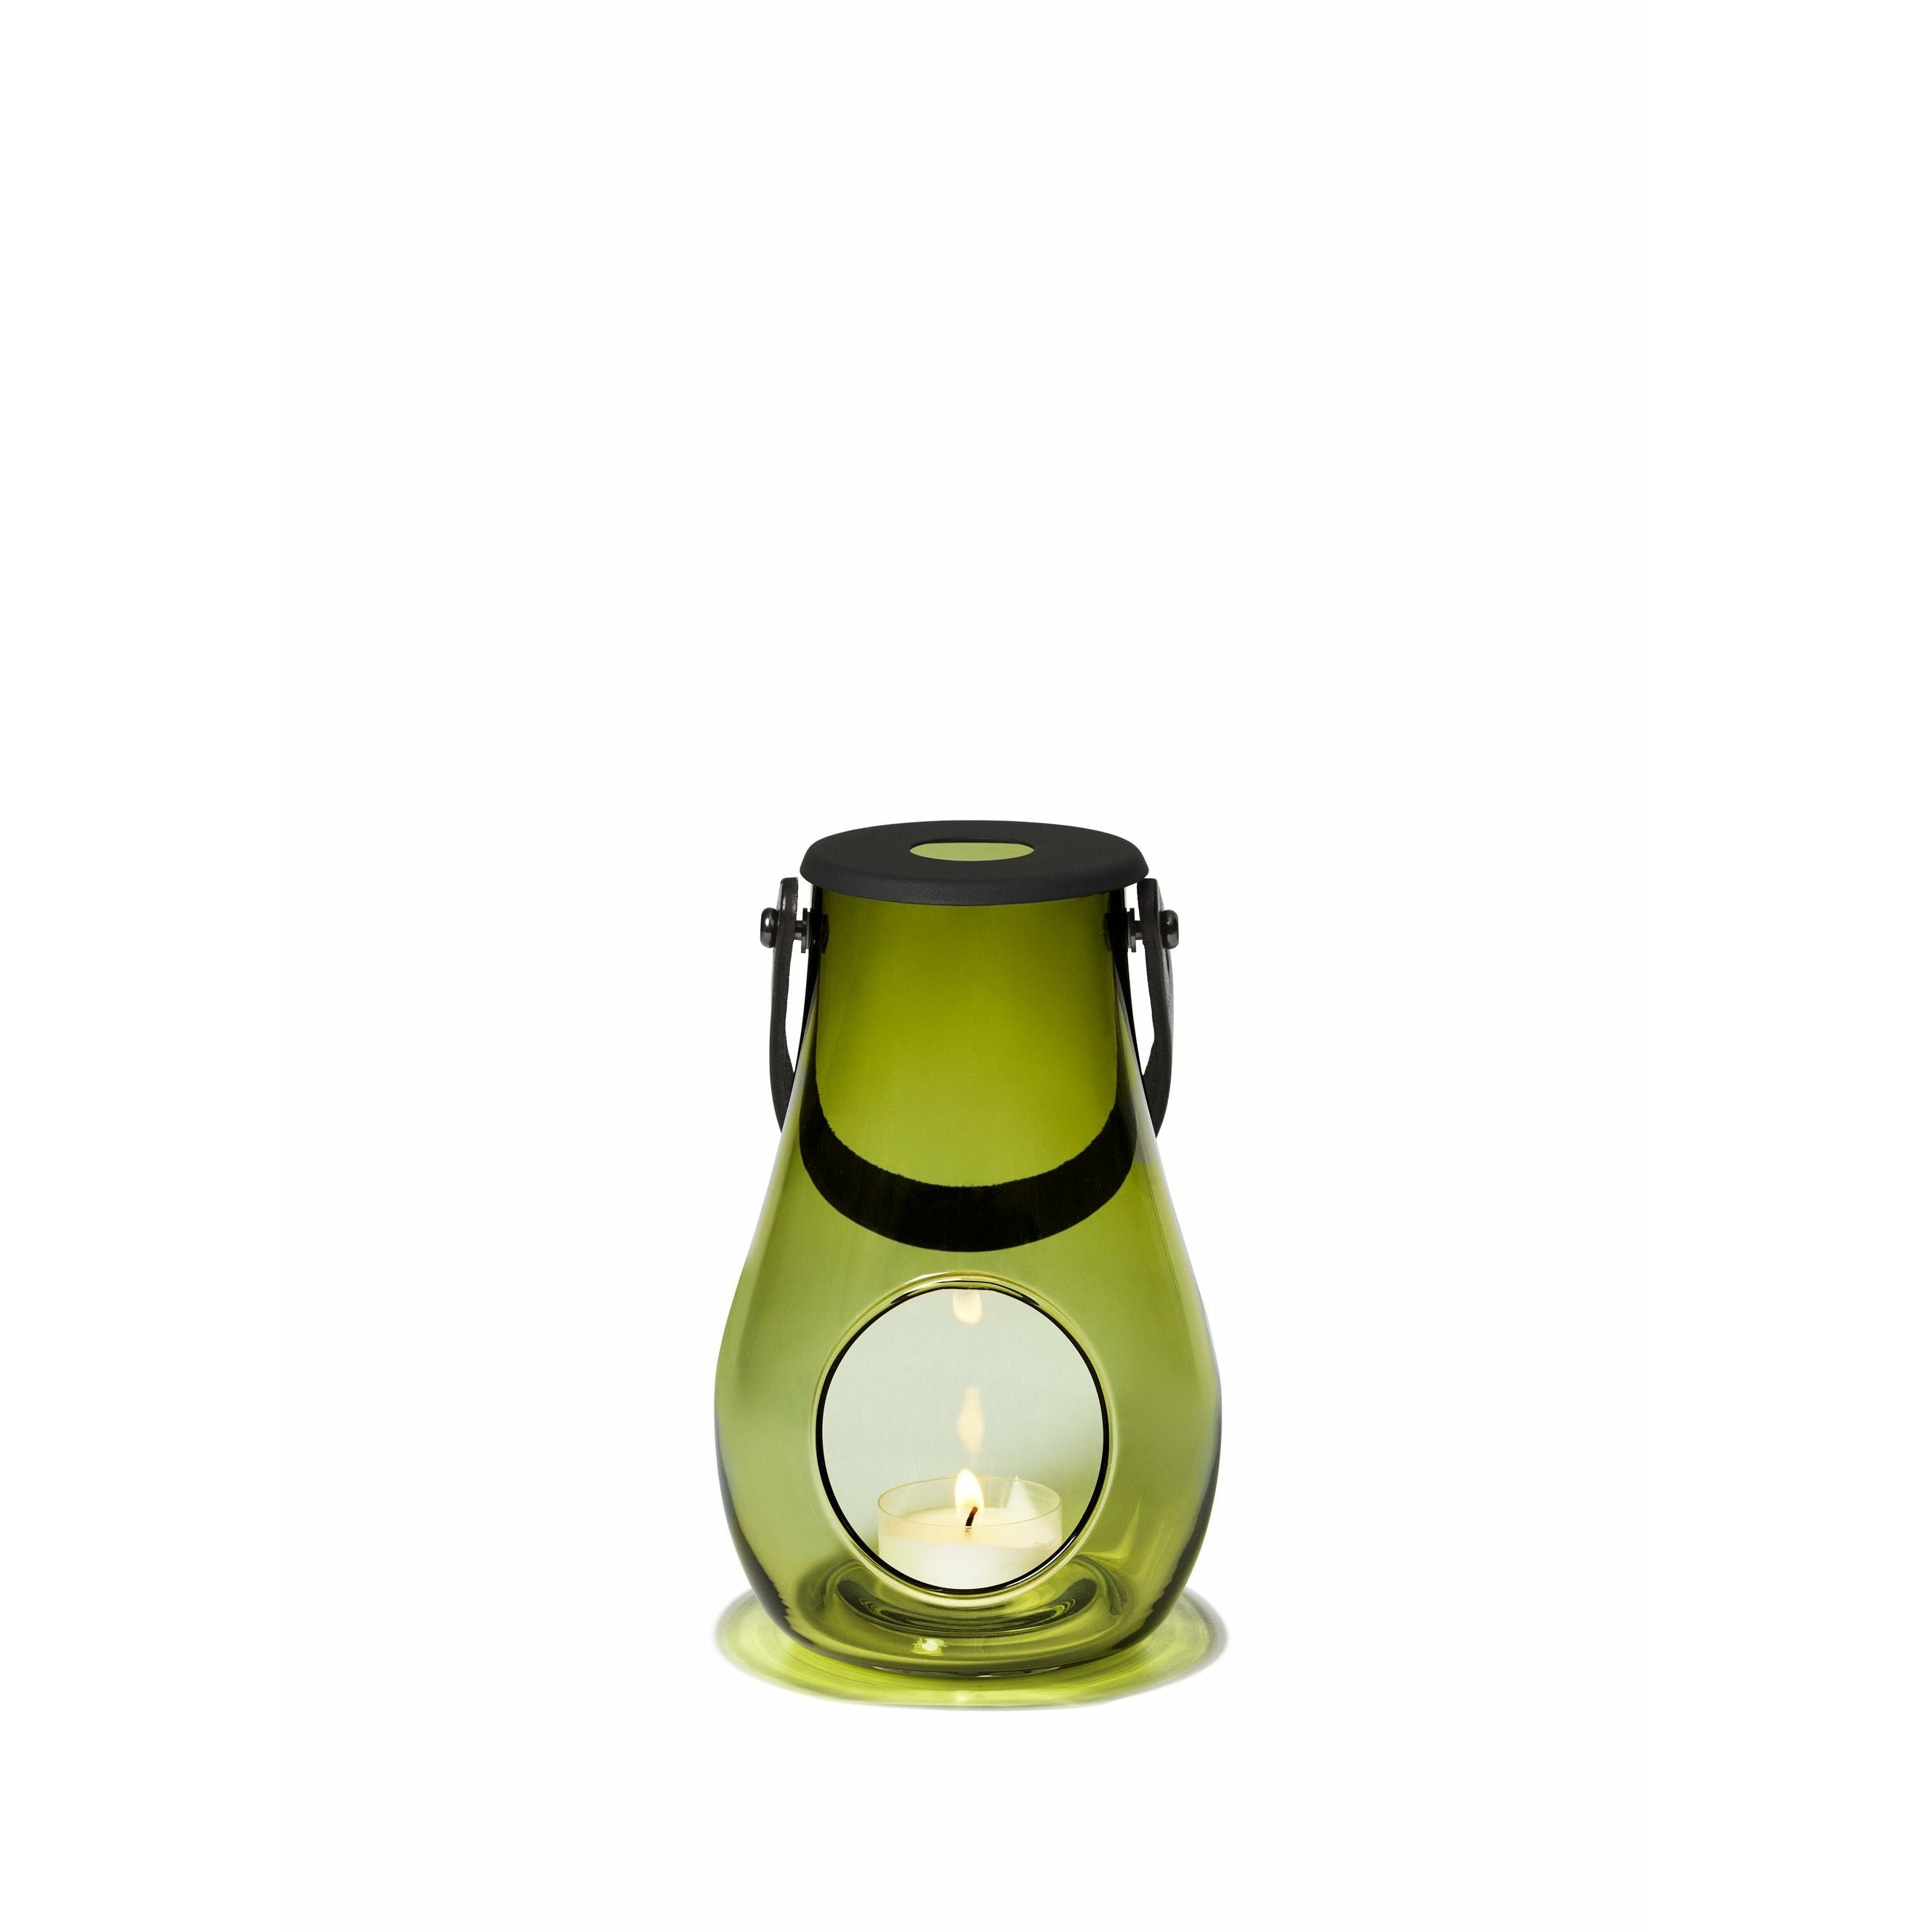 Holmegaard DWL Lanterne 16,5厘米，橄榄绿色